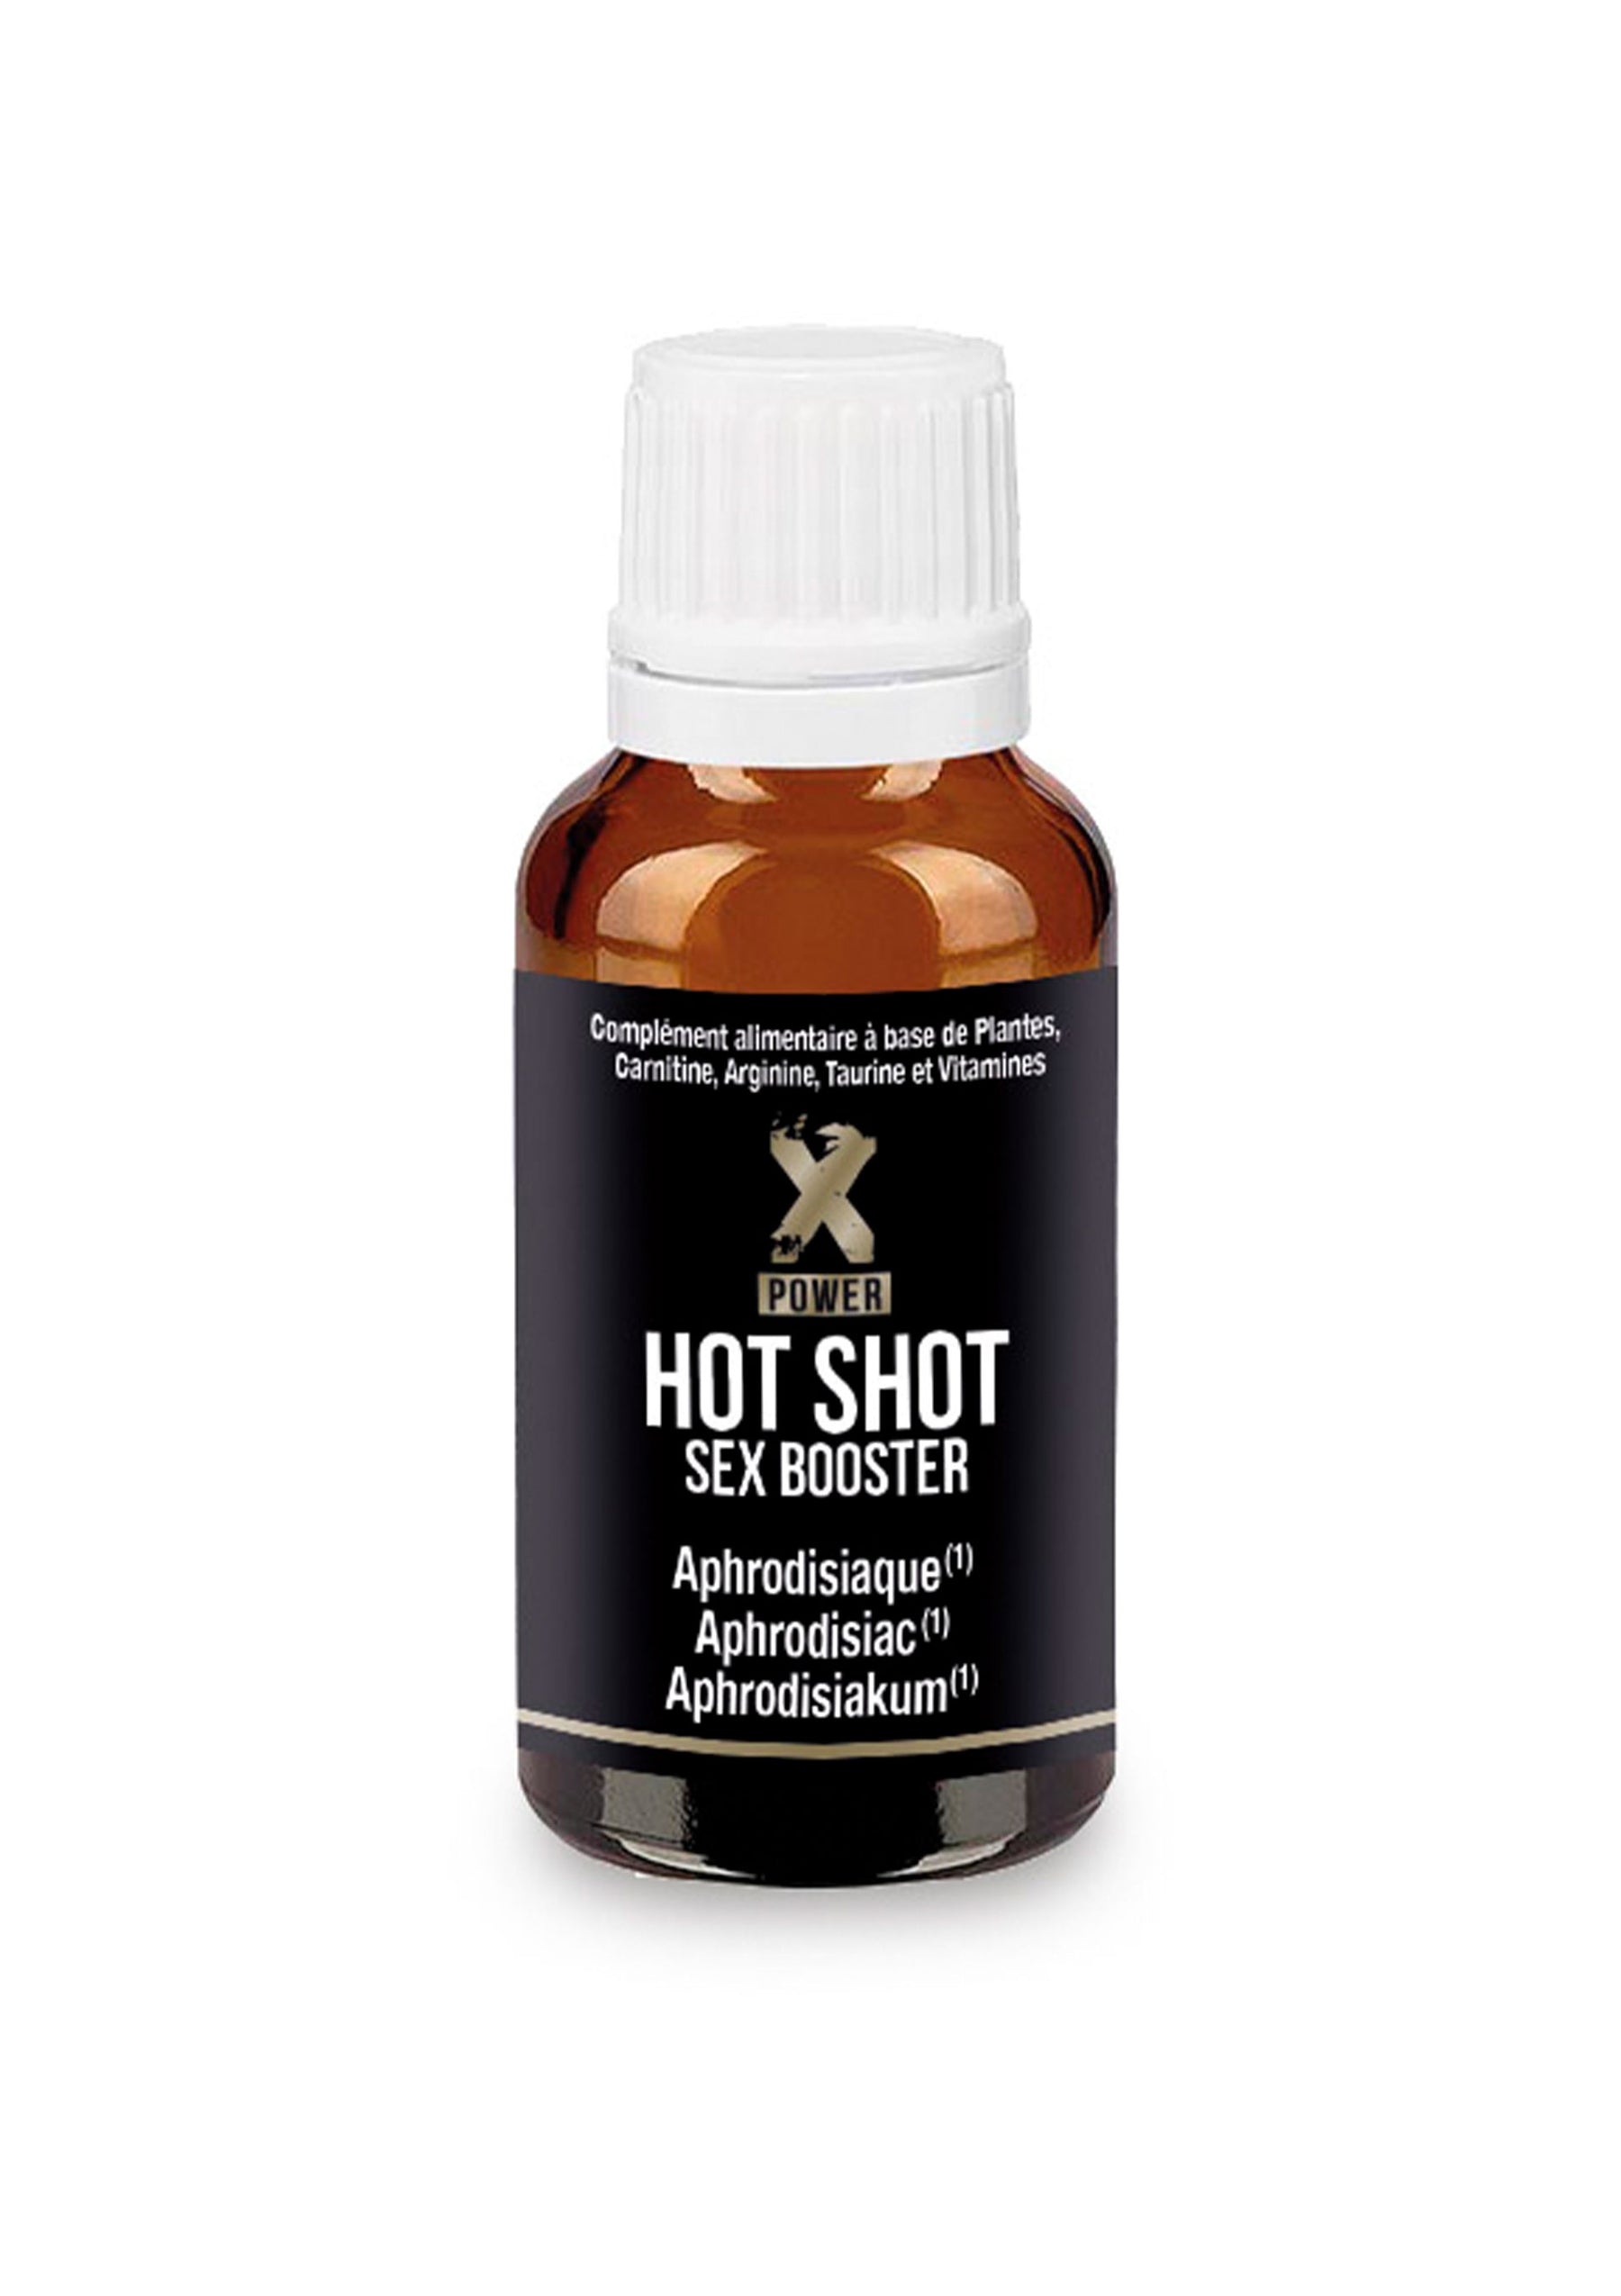 Hot Shot Sex Booster 3 shots